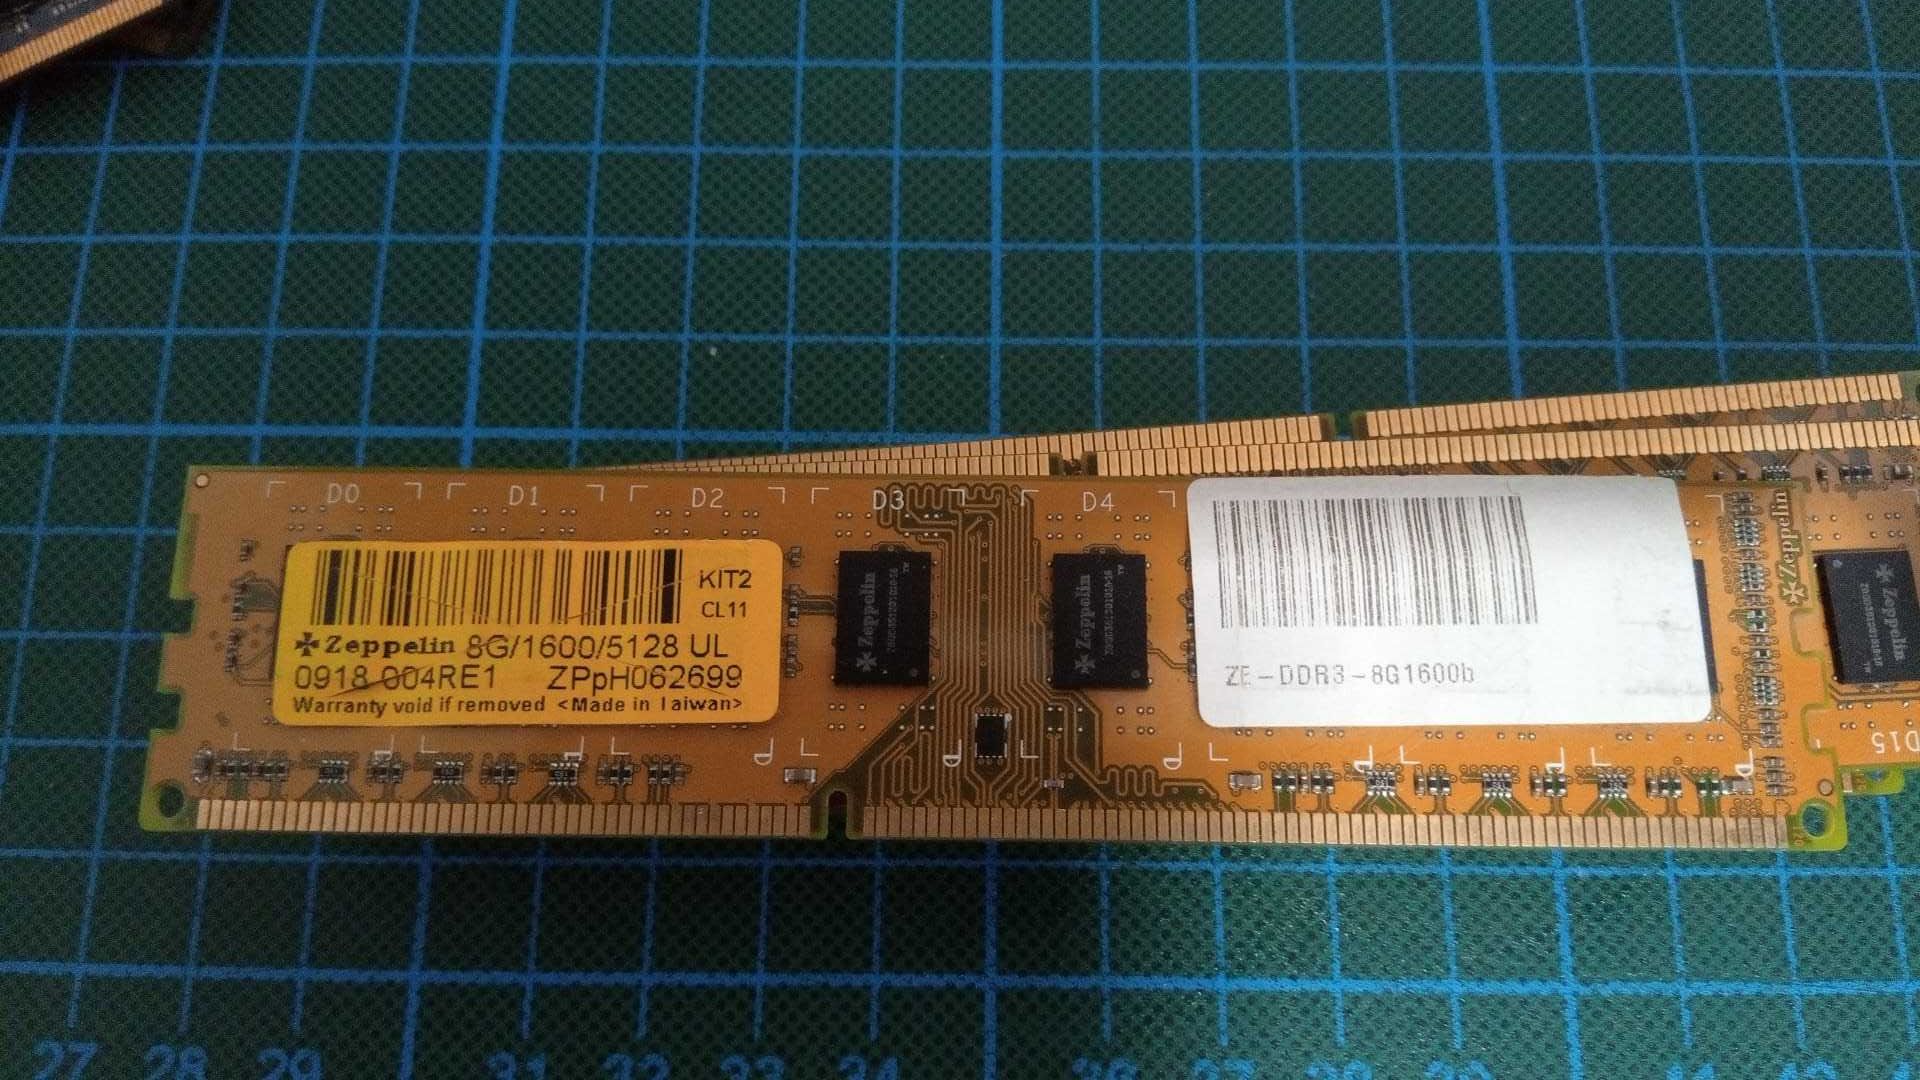 4x 8GB DDR3 1600